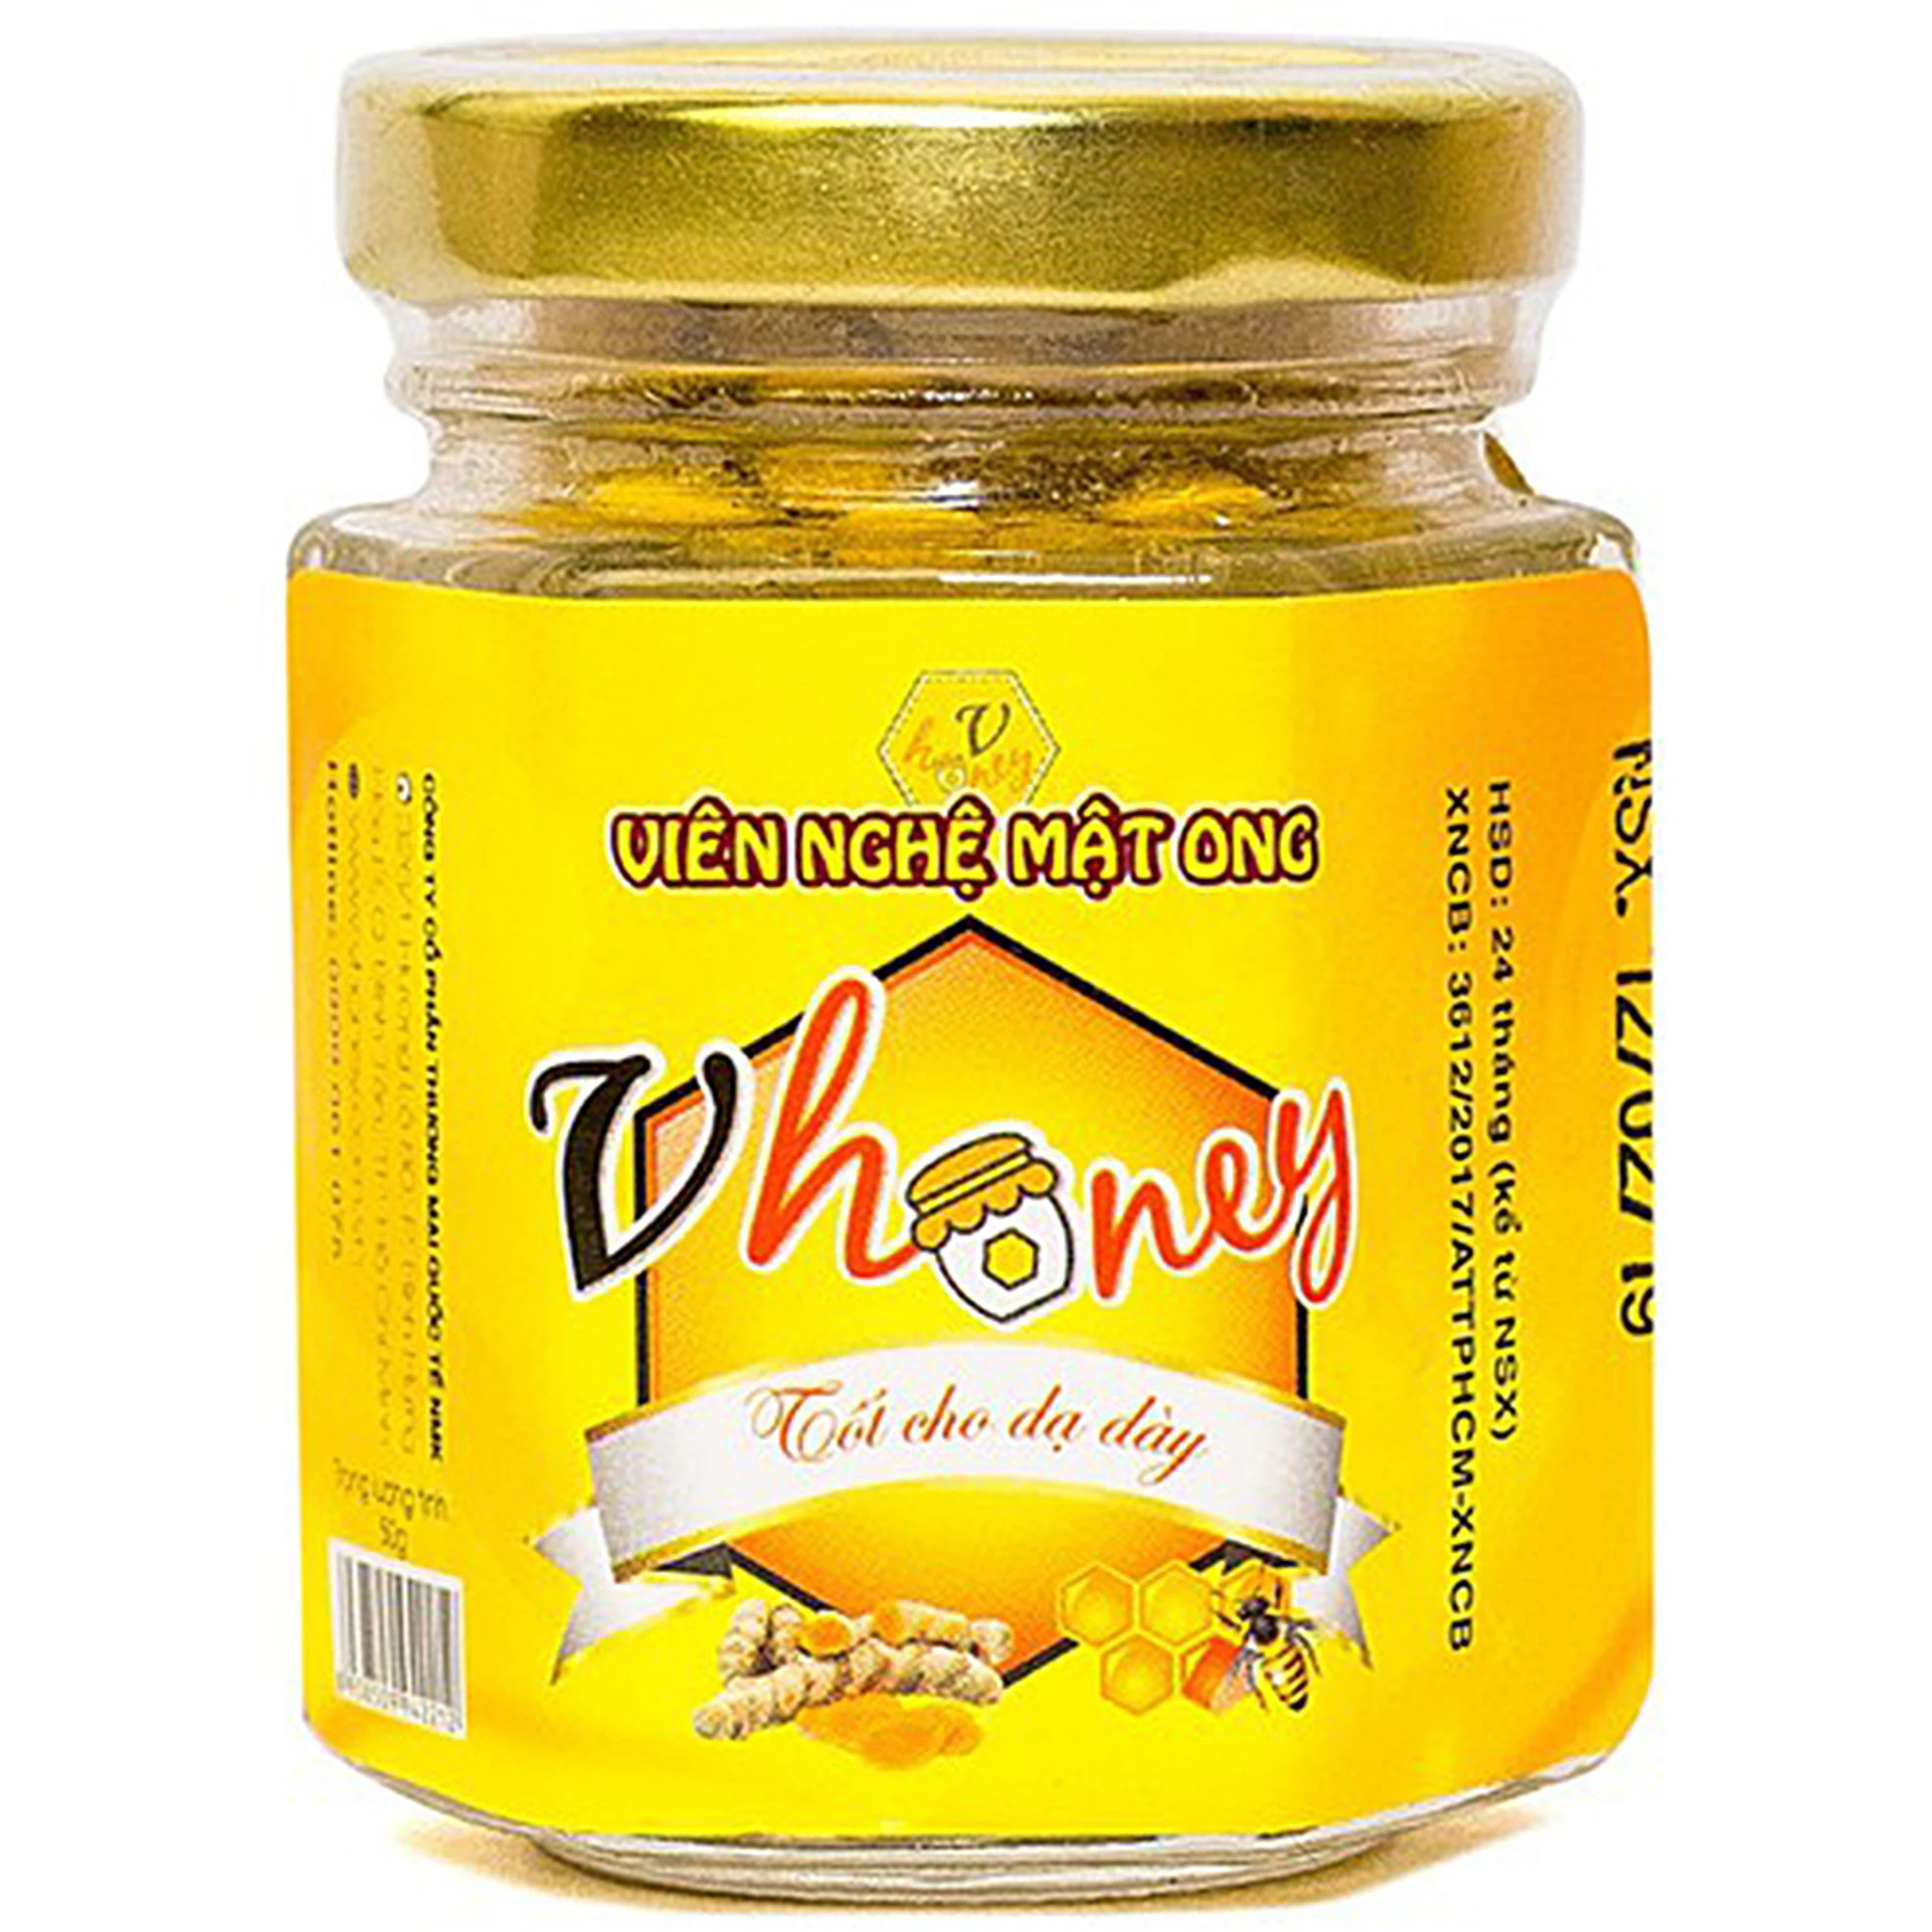 Viên nghệ mật ong Vhoney tốt cho dạ dày (150g)